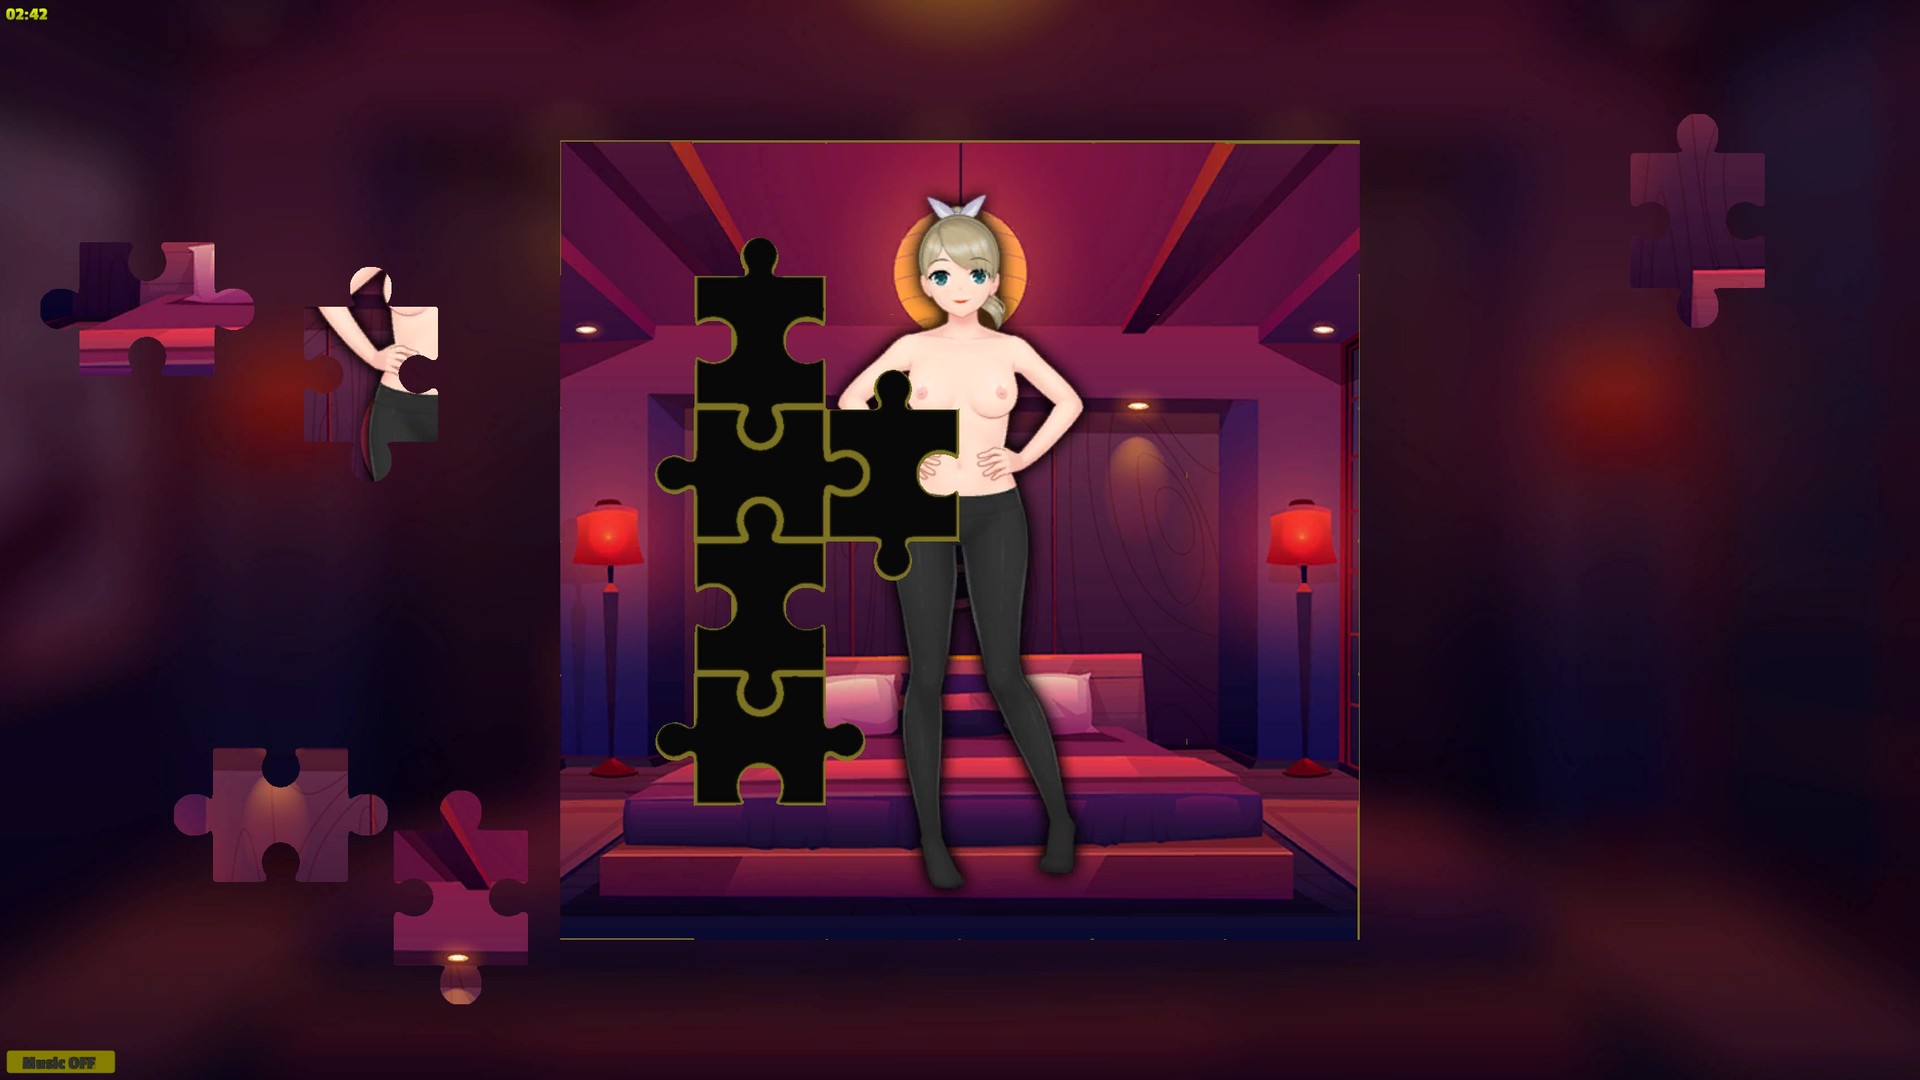 Hentai Jigsaw Girls - Artbook DLC Steam CD Key